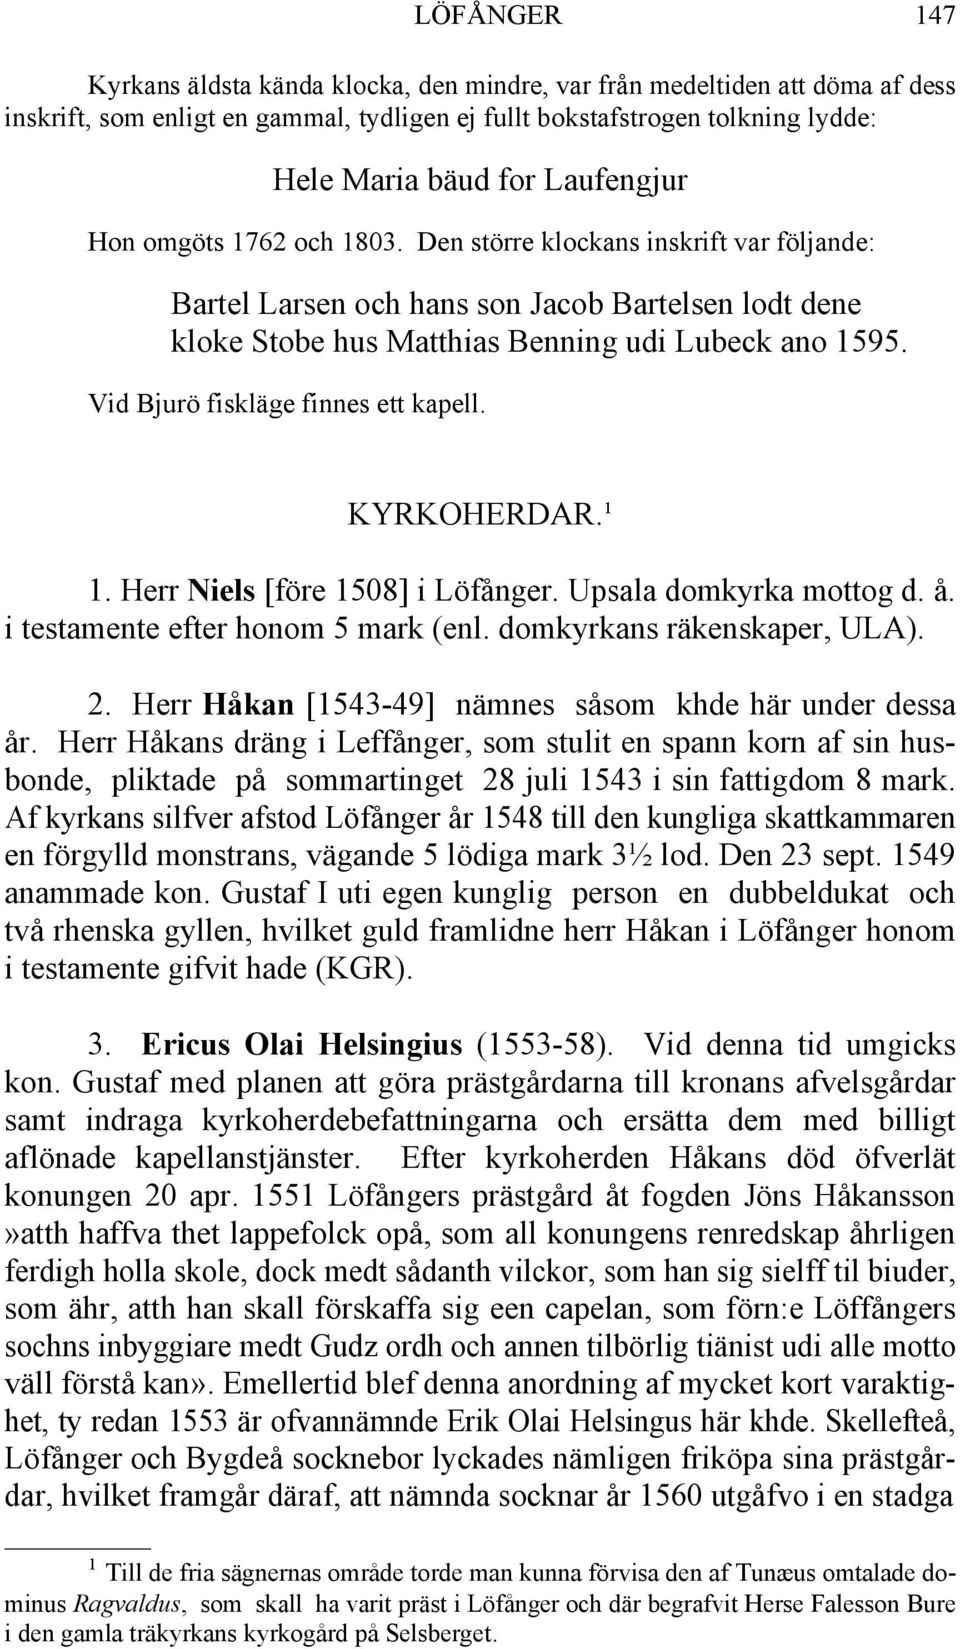 Vid Bjurö fiskläge finnes ett kapell. KYRKOHERDAR.¹ 1. Herr Niels [före 1508] i Löfånger. Upsala domkyrka mottog d. å. i testamente efter honom 5 mark (enl. domkyrkans räkenskaper, ULA). 2.